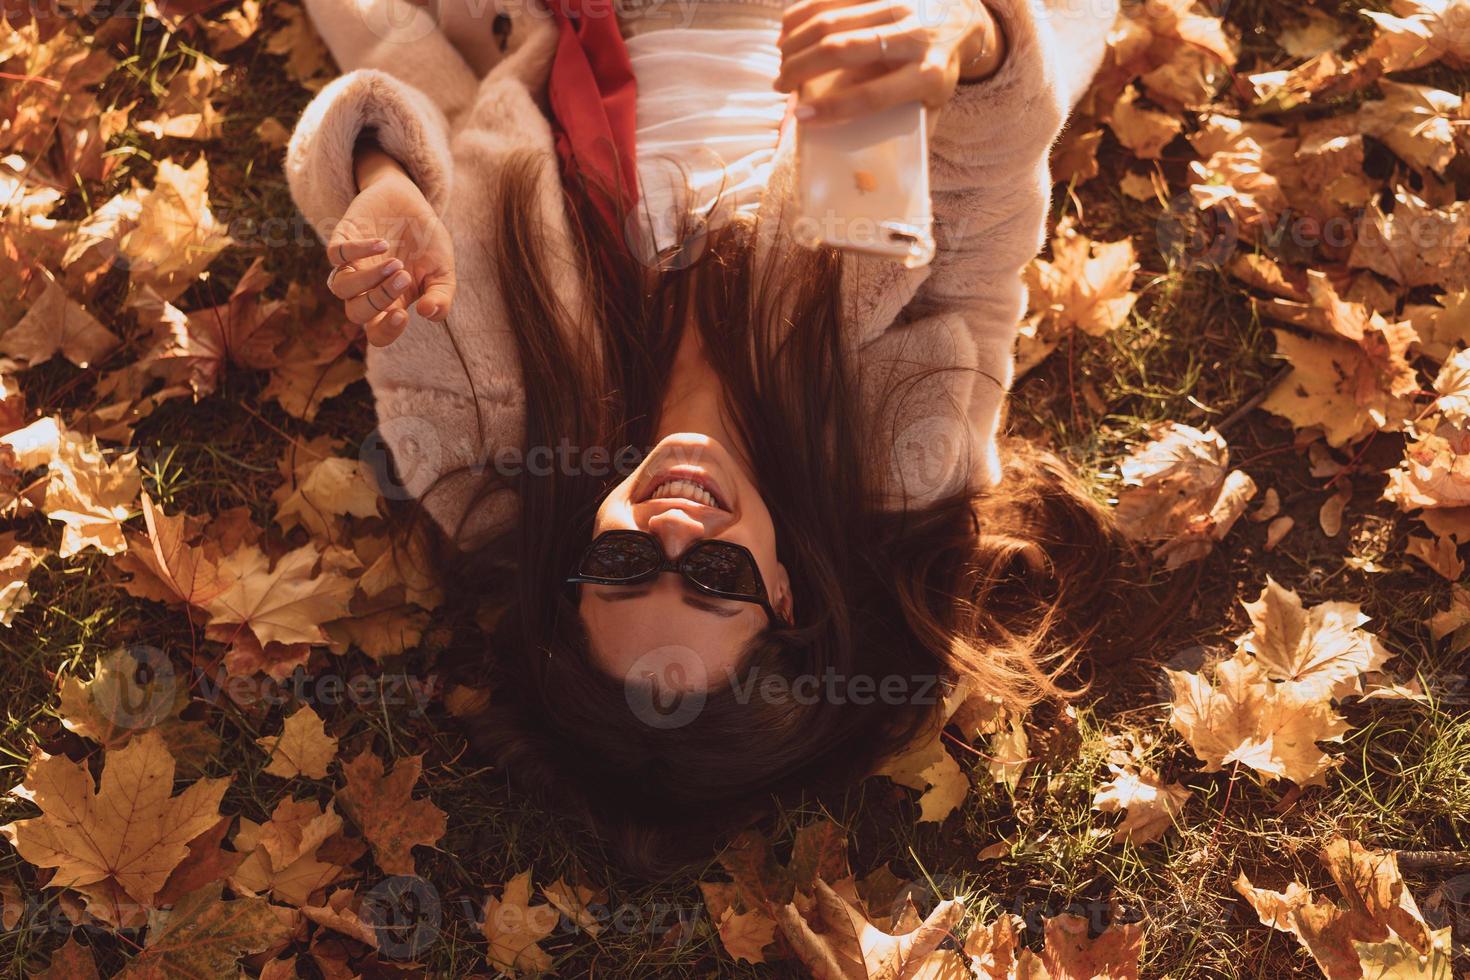 la vista superior de una hermosa joven se encuentra en las hojas de otoño foto